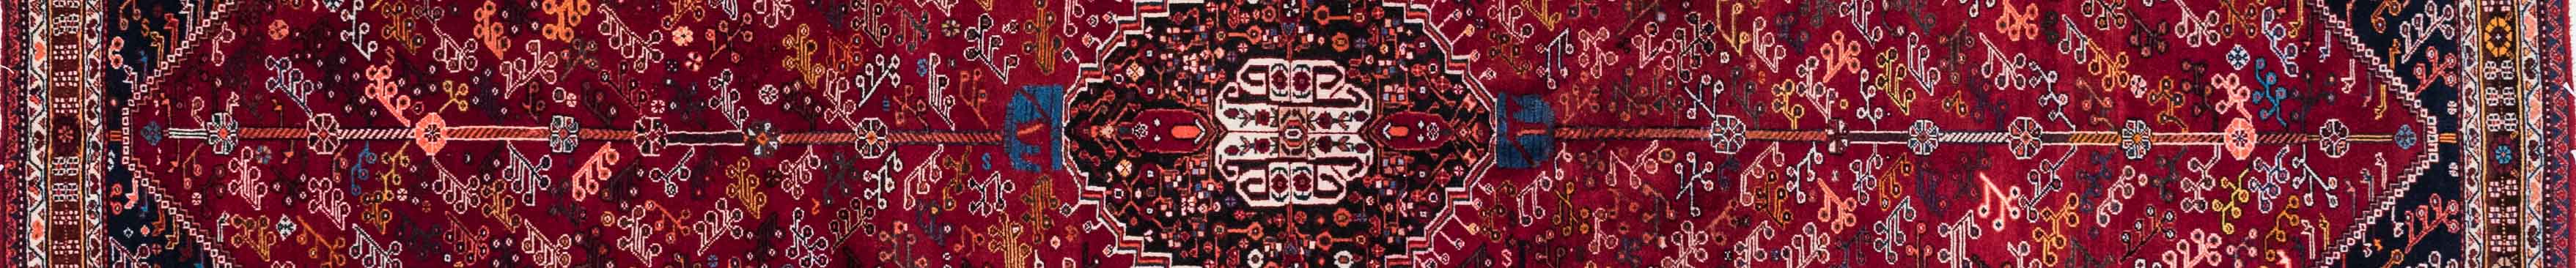 Abadeh Persian Carpet Rug N1Carpet Canada Montreal Tapis Persan 5500